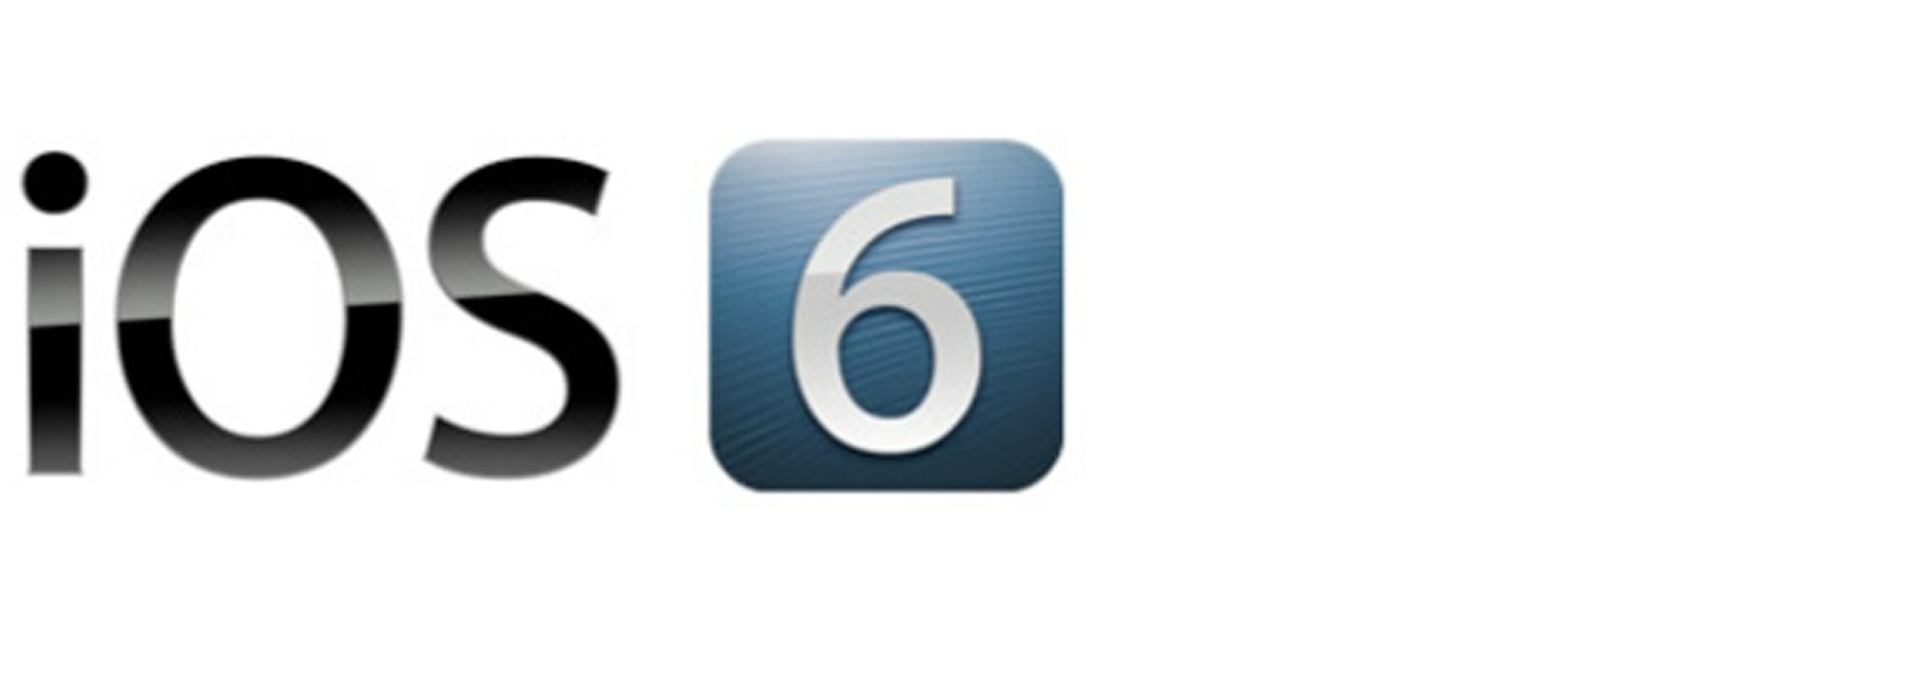 iOS 6 est arrivé, tout ce qu’il faut savoir pour l’installer